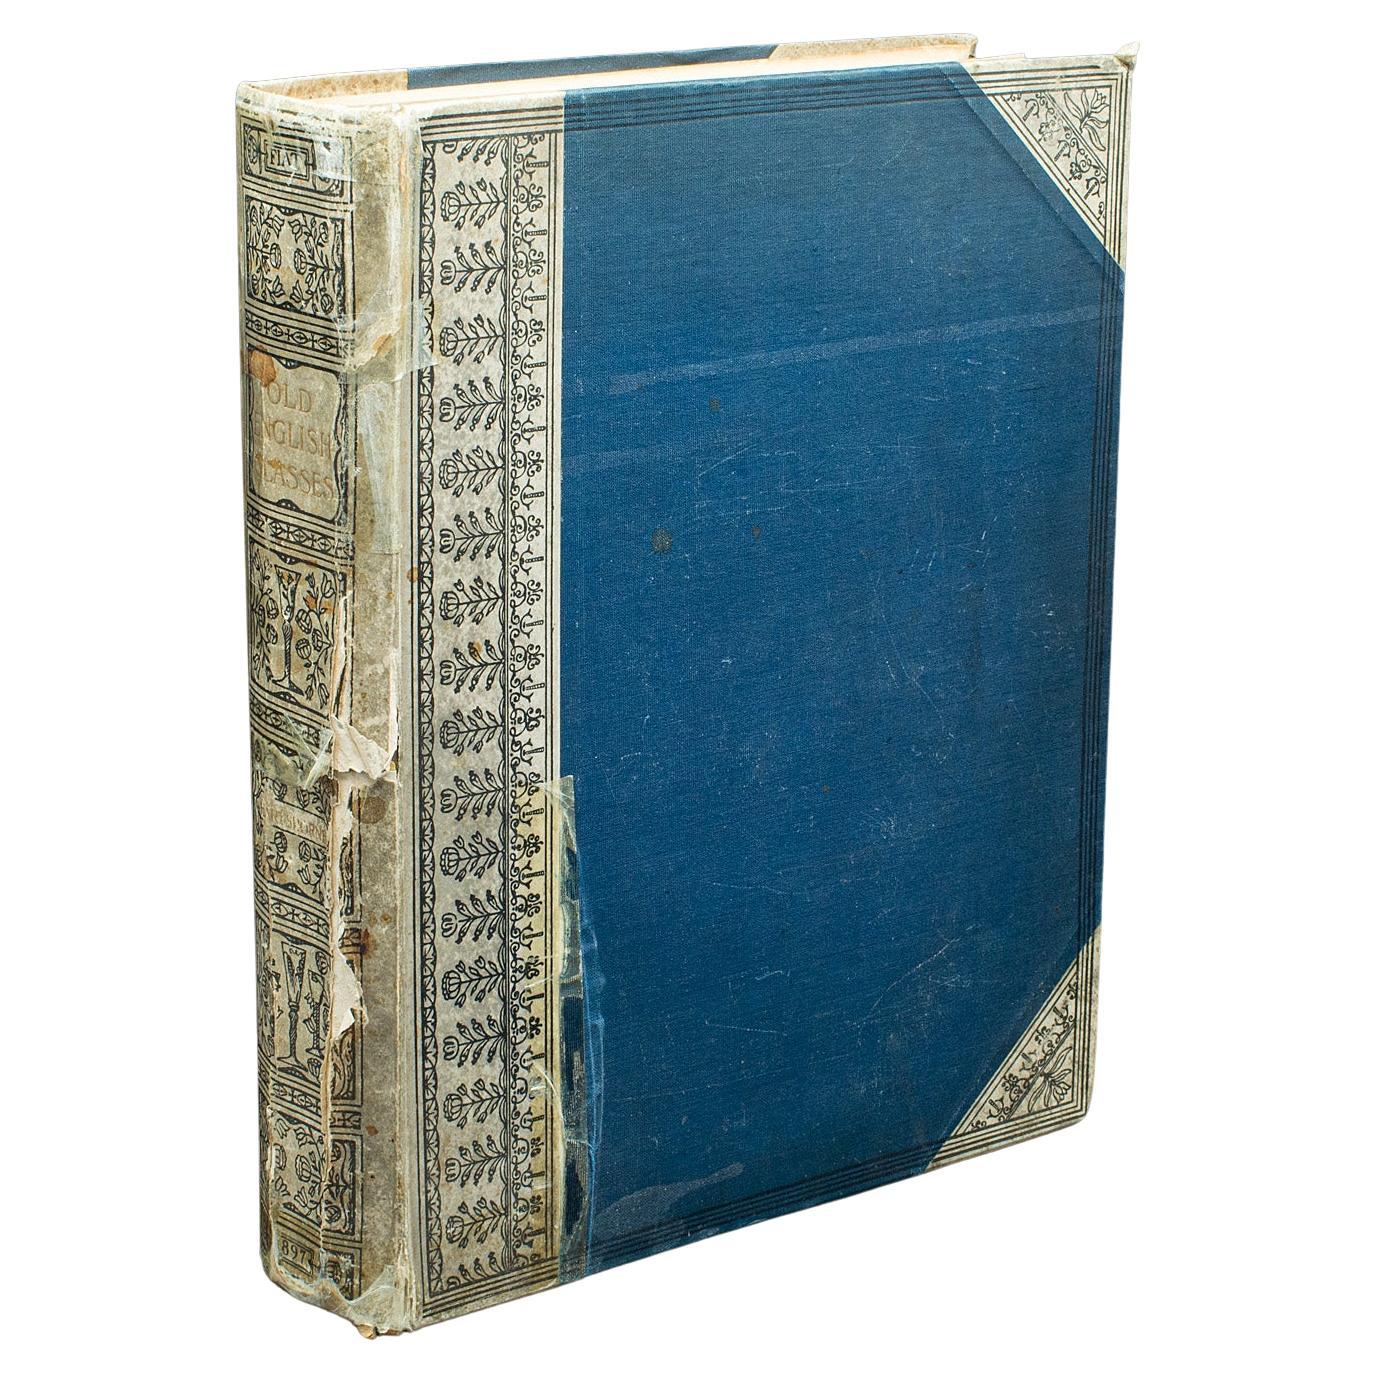 Antikes Referenzbuch, alte englische Gläser, Hartshorne, Geschichte, viktorianisch